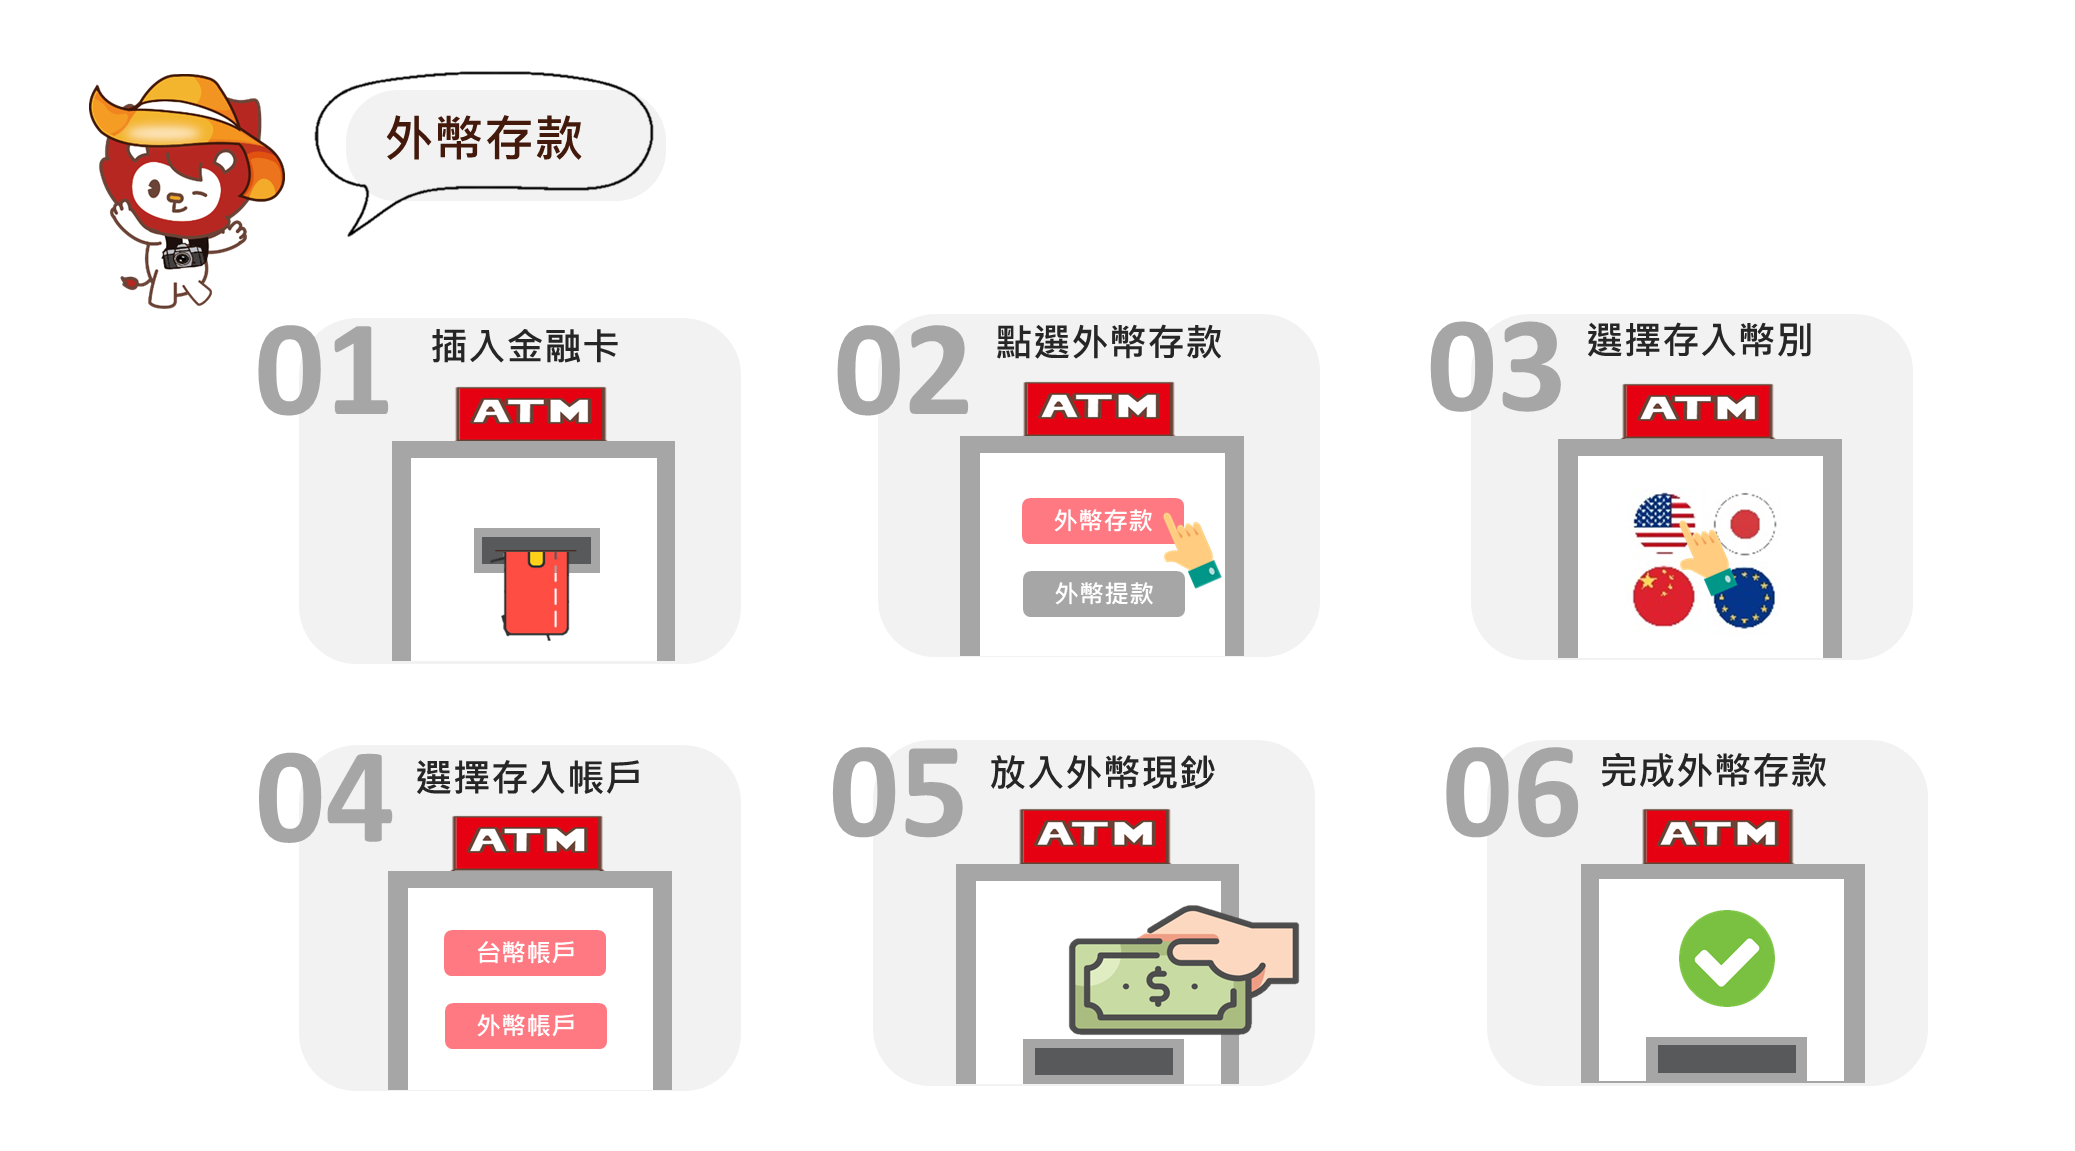 ATM web 3